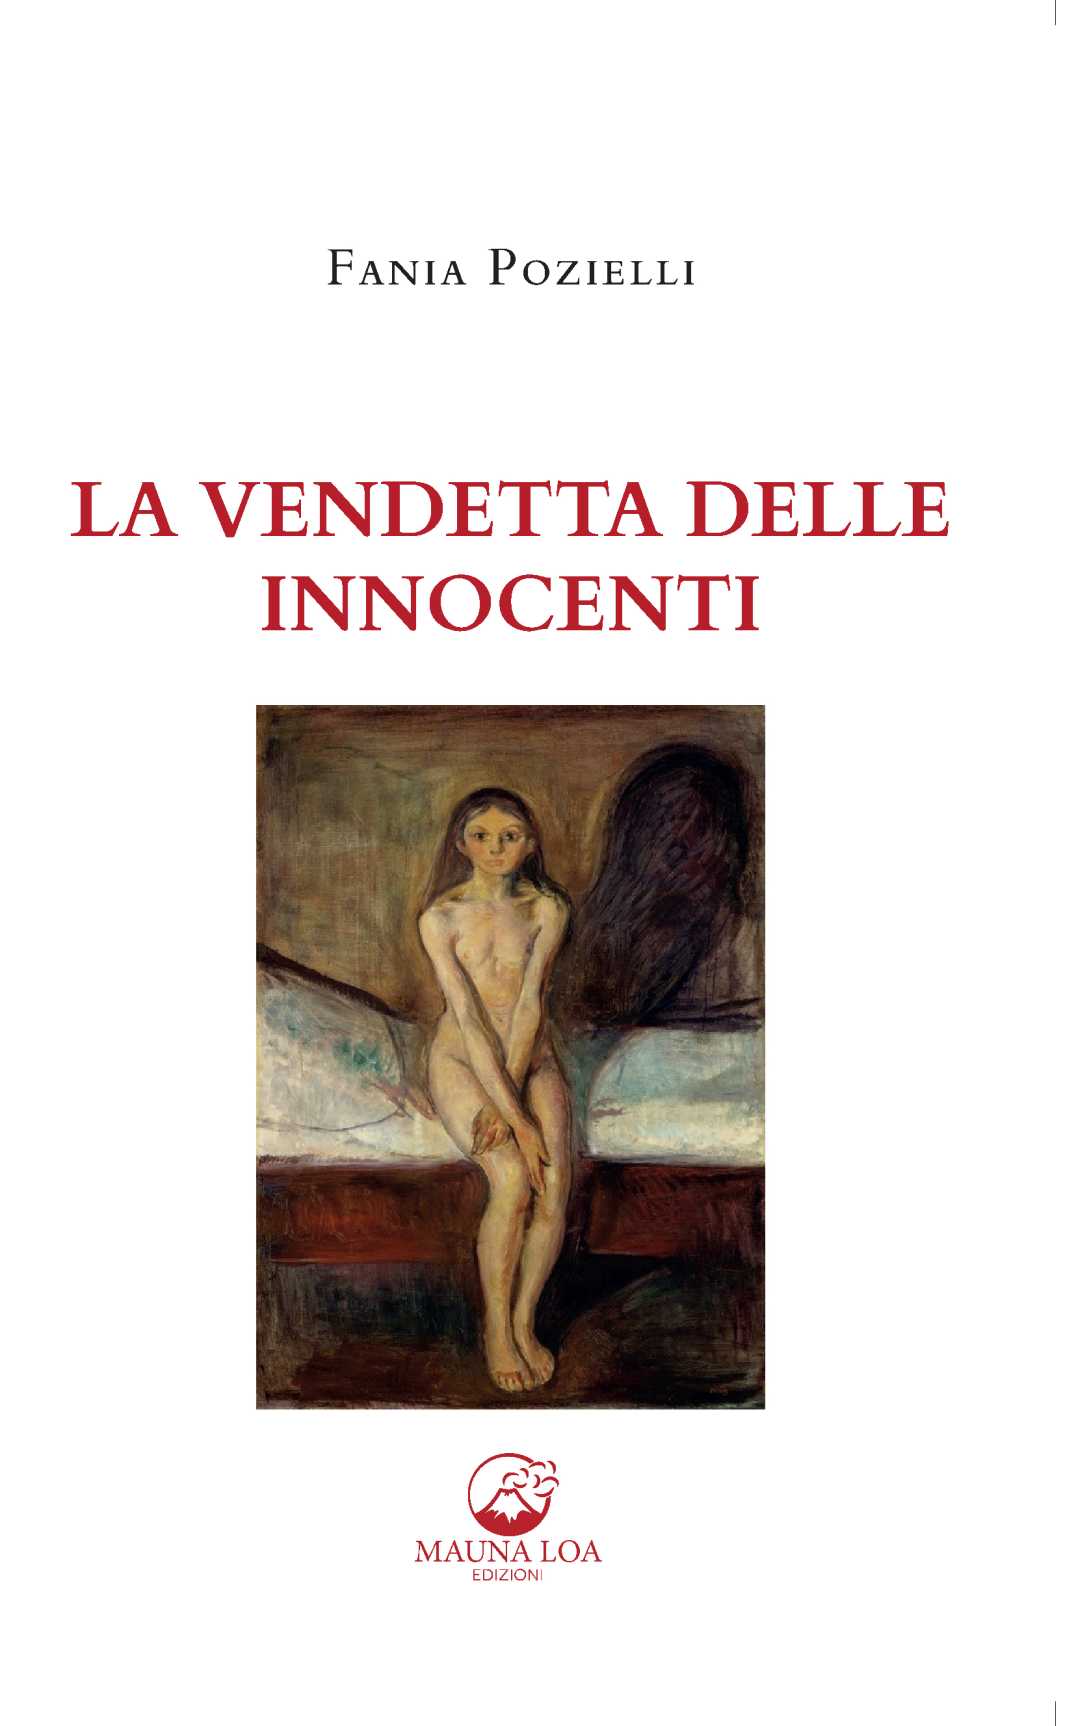 Fania Pozielli, “La Vendetta delle Innocenti”